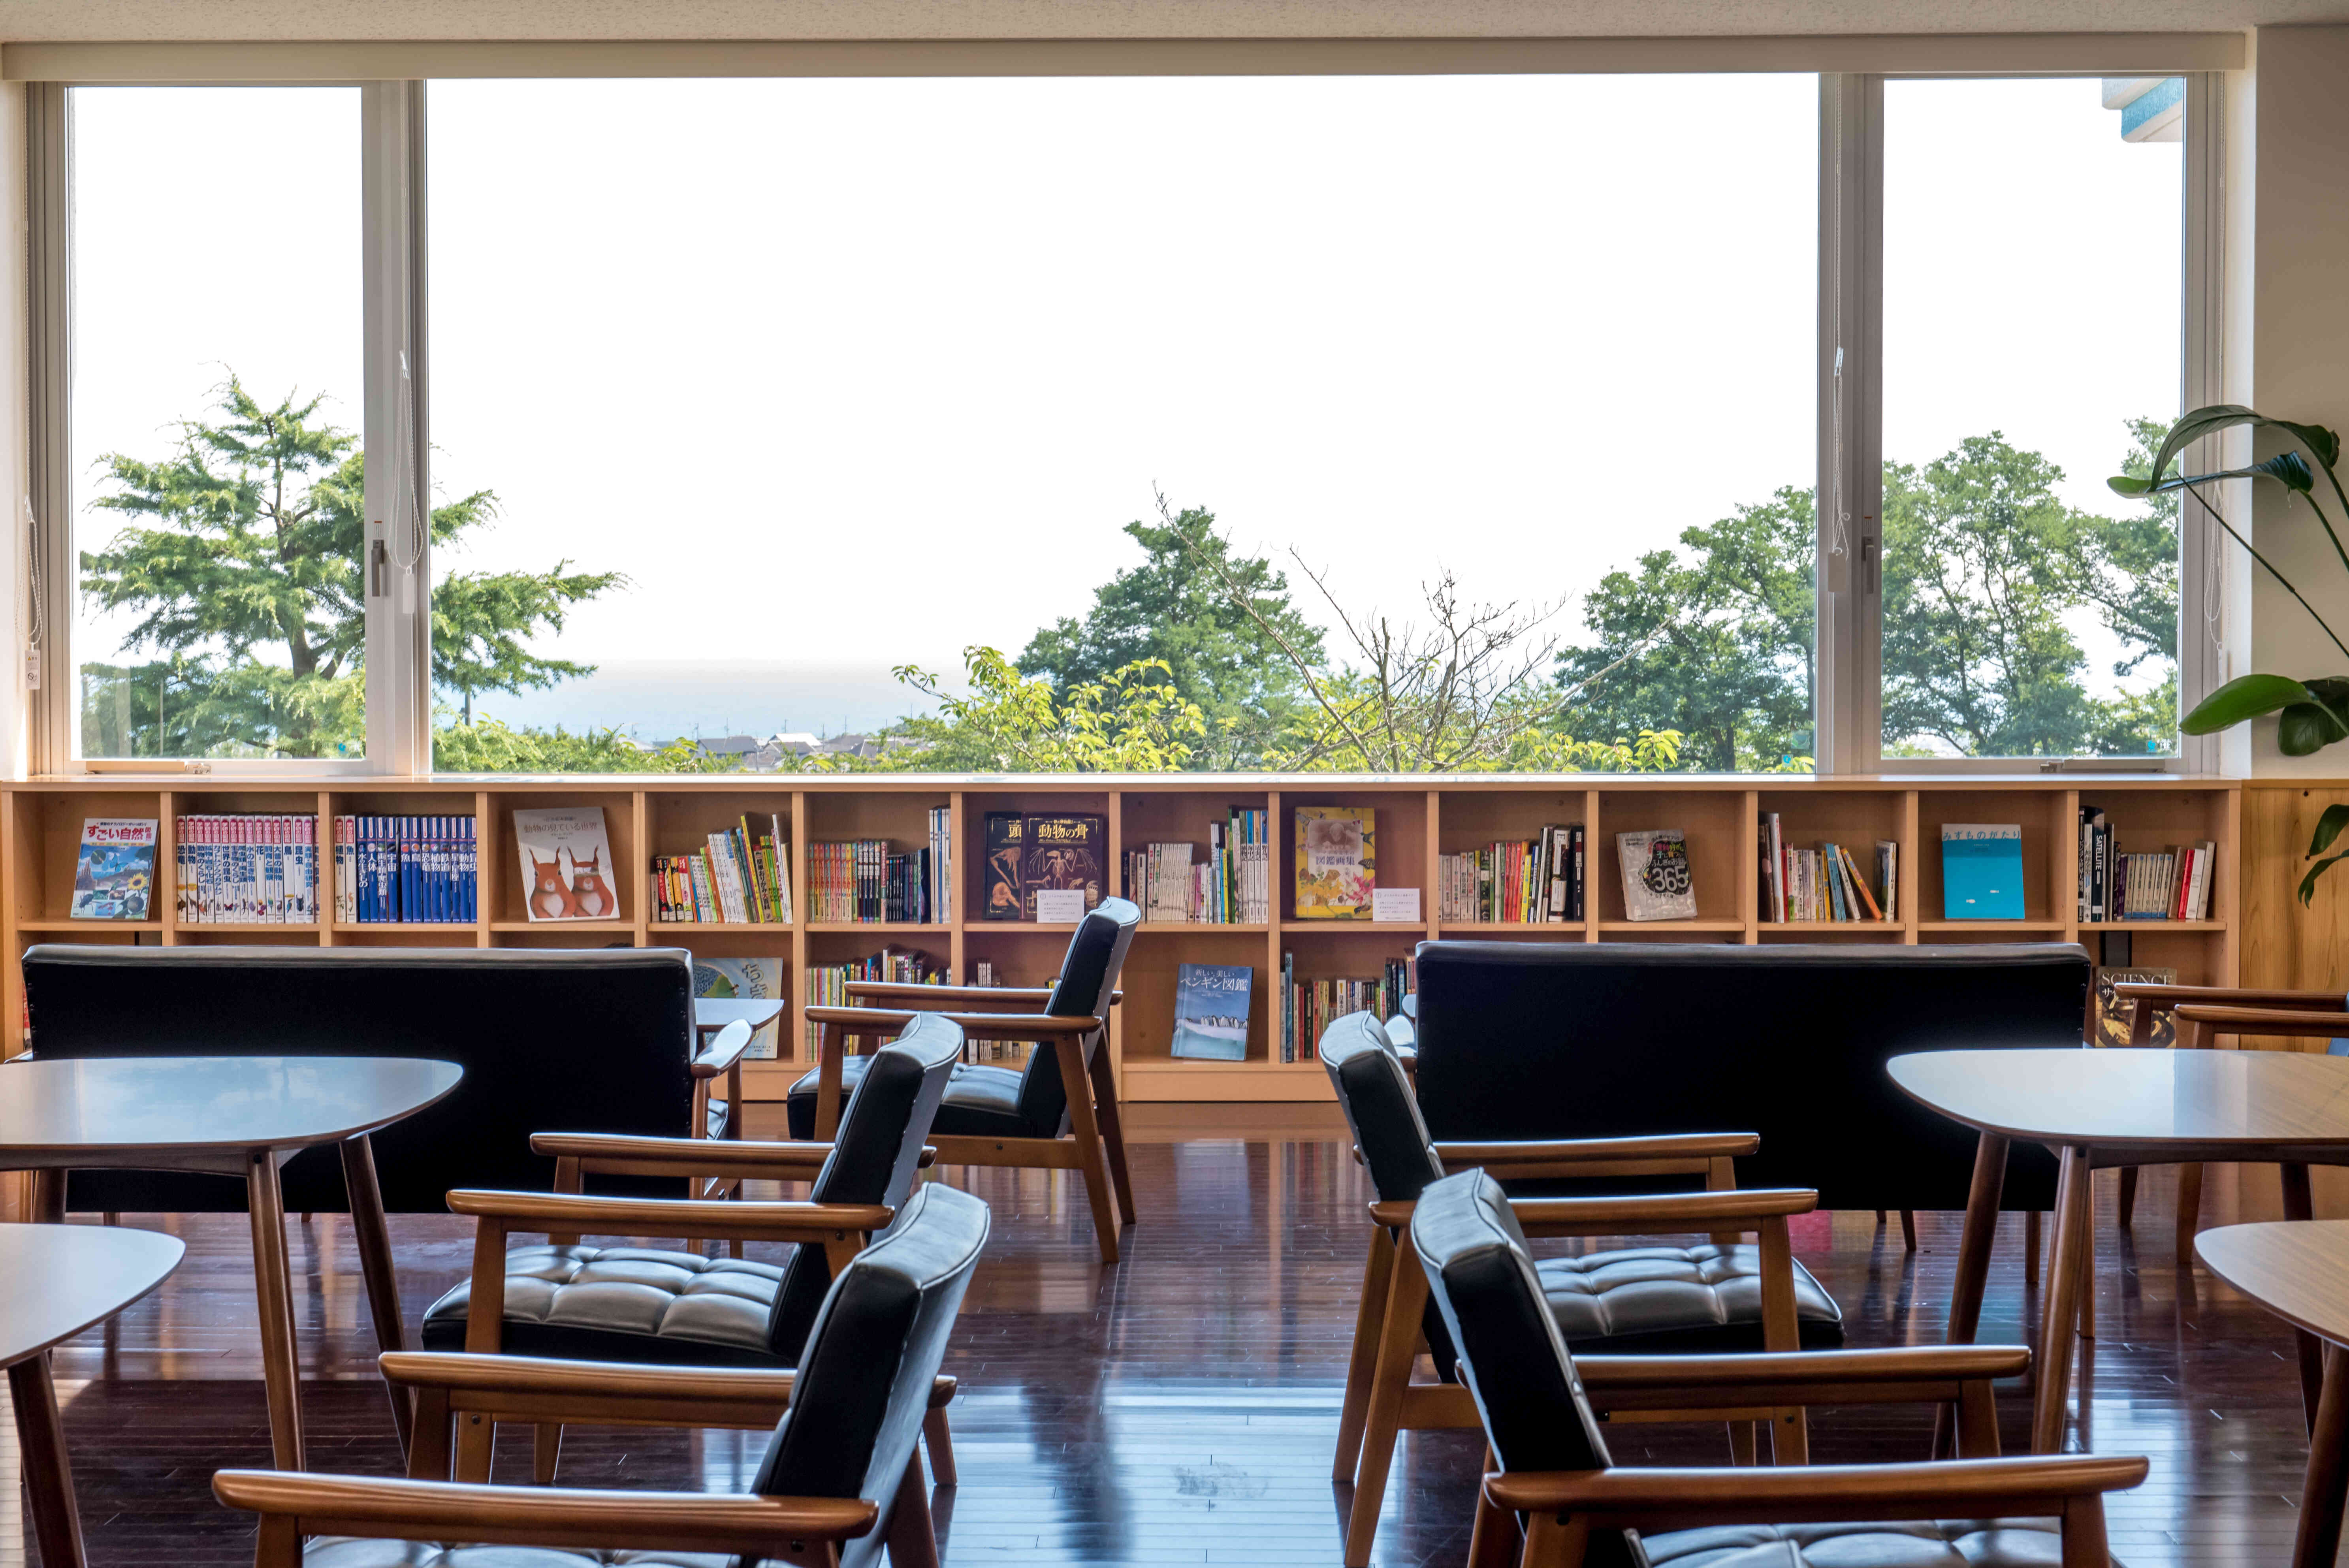 無料スペース「図鑑カフェ」
駿河湾も一望することができます